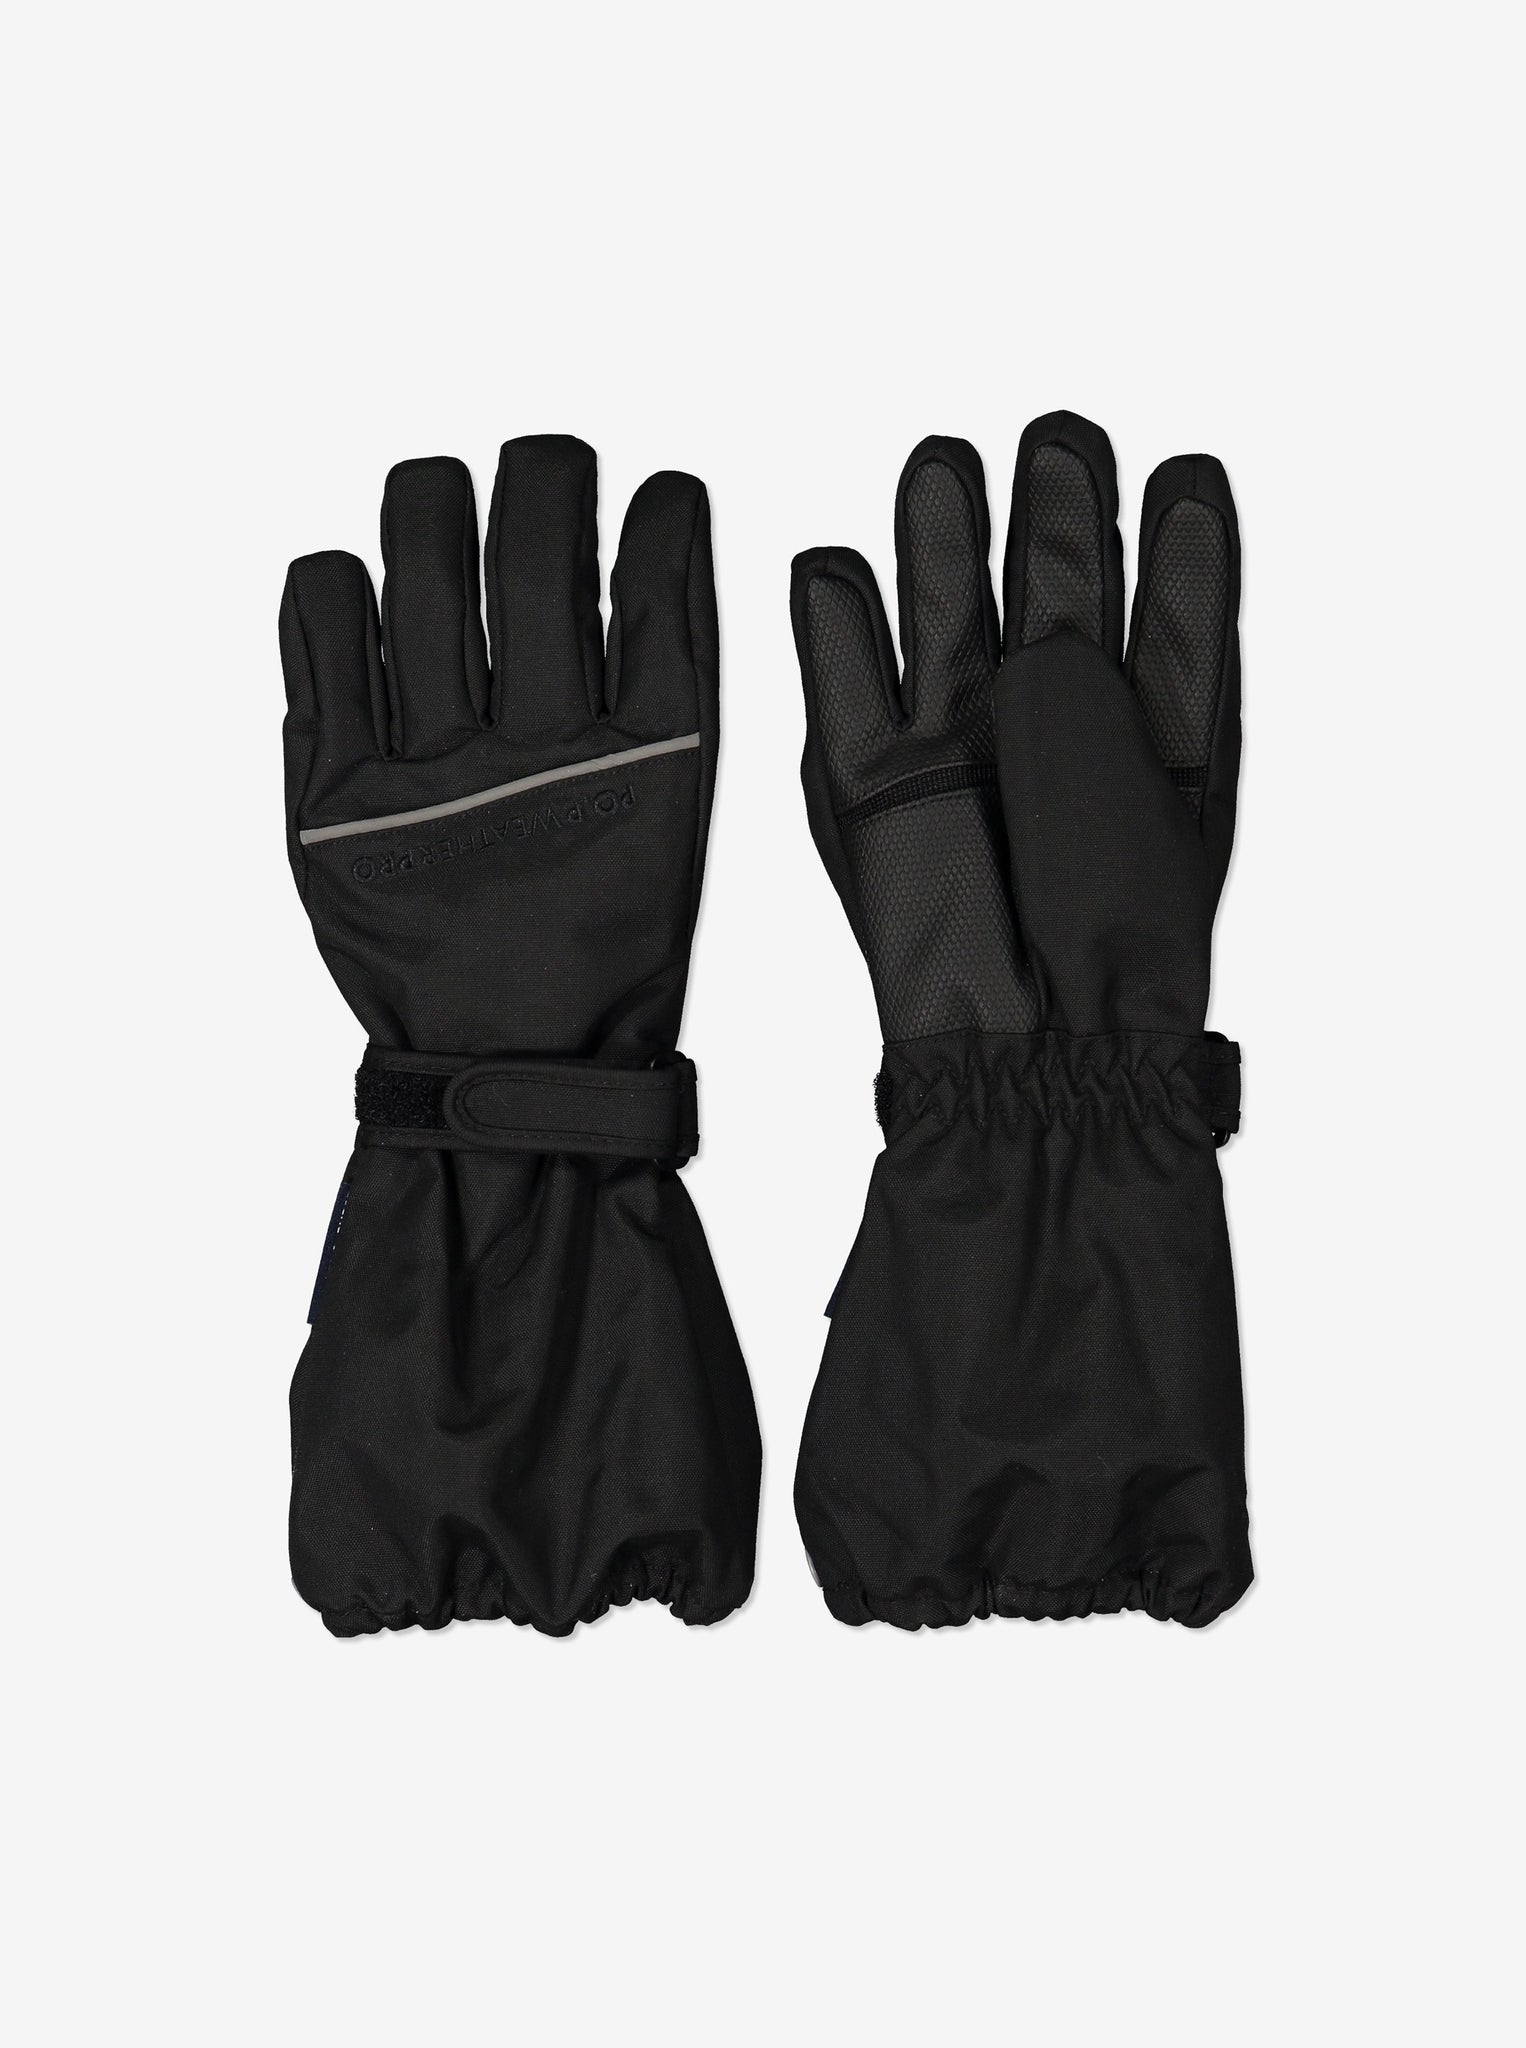 Padded Kids Ski Gloves-2-12y-Black-Boy